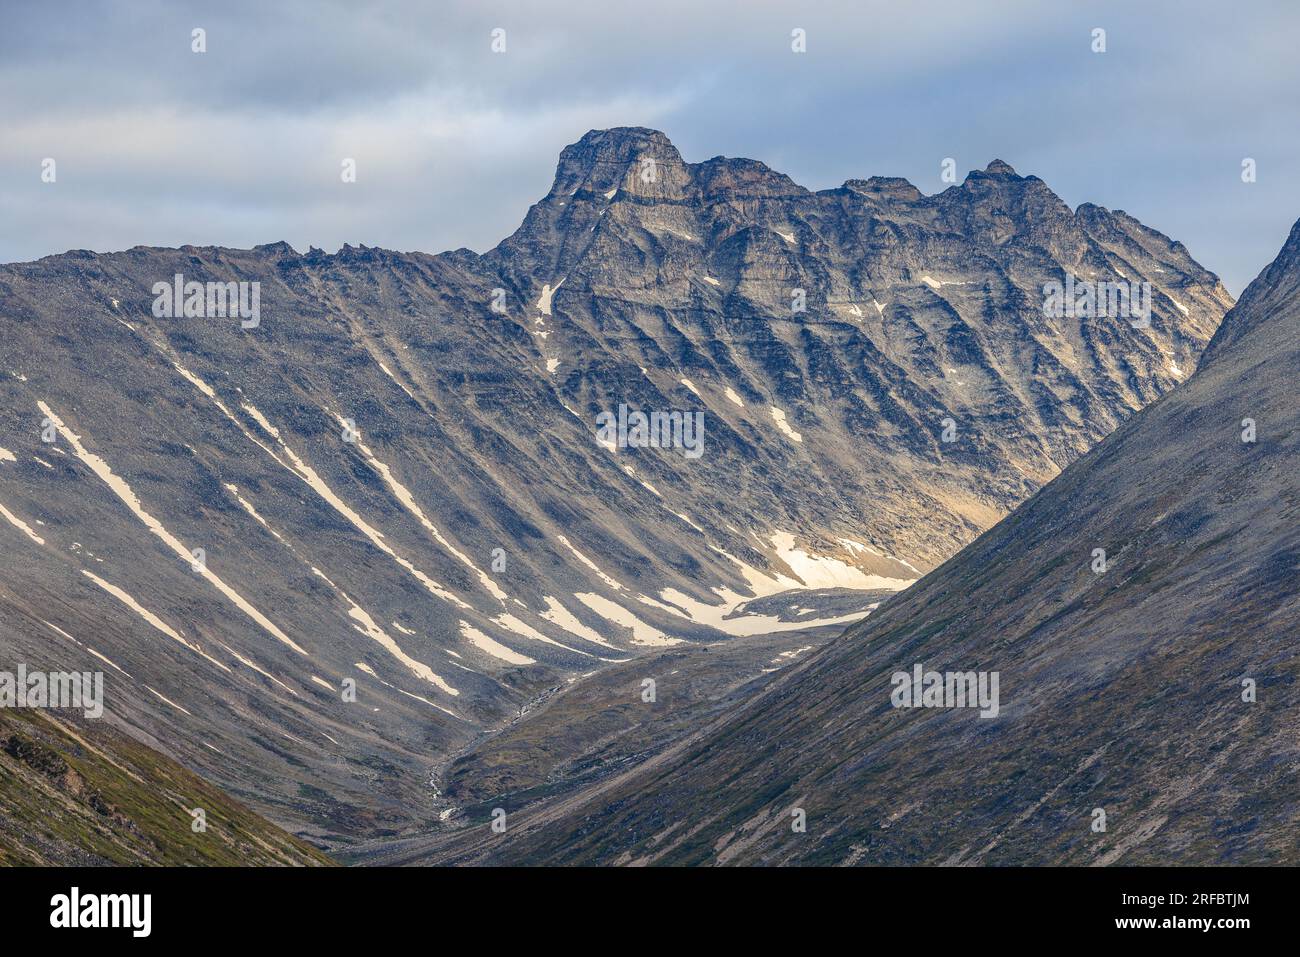 foto aerea di cime rocciose con lati ripidi che formano una valle a forma di v al largo del fiordo di tasermiut in groenlandia Foto Stock